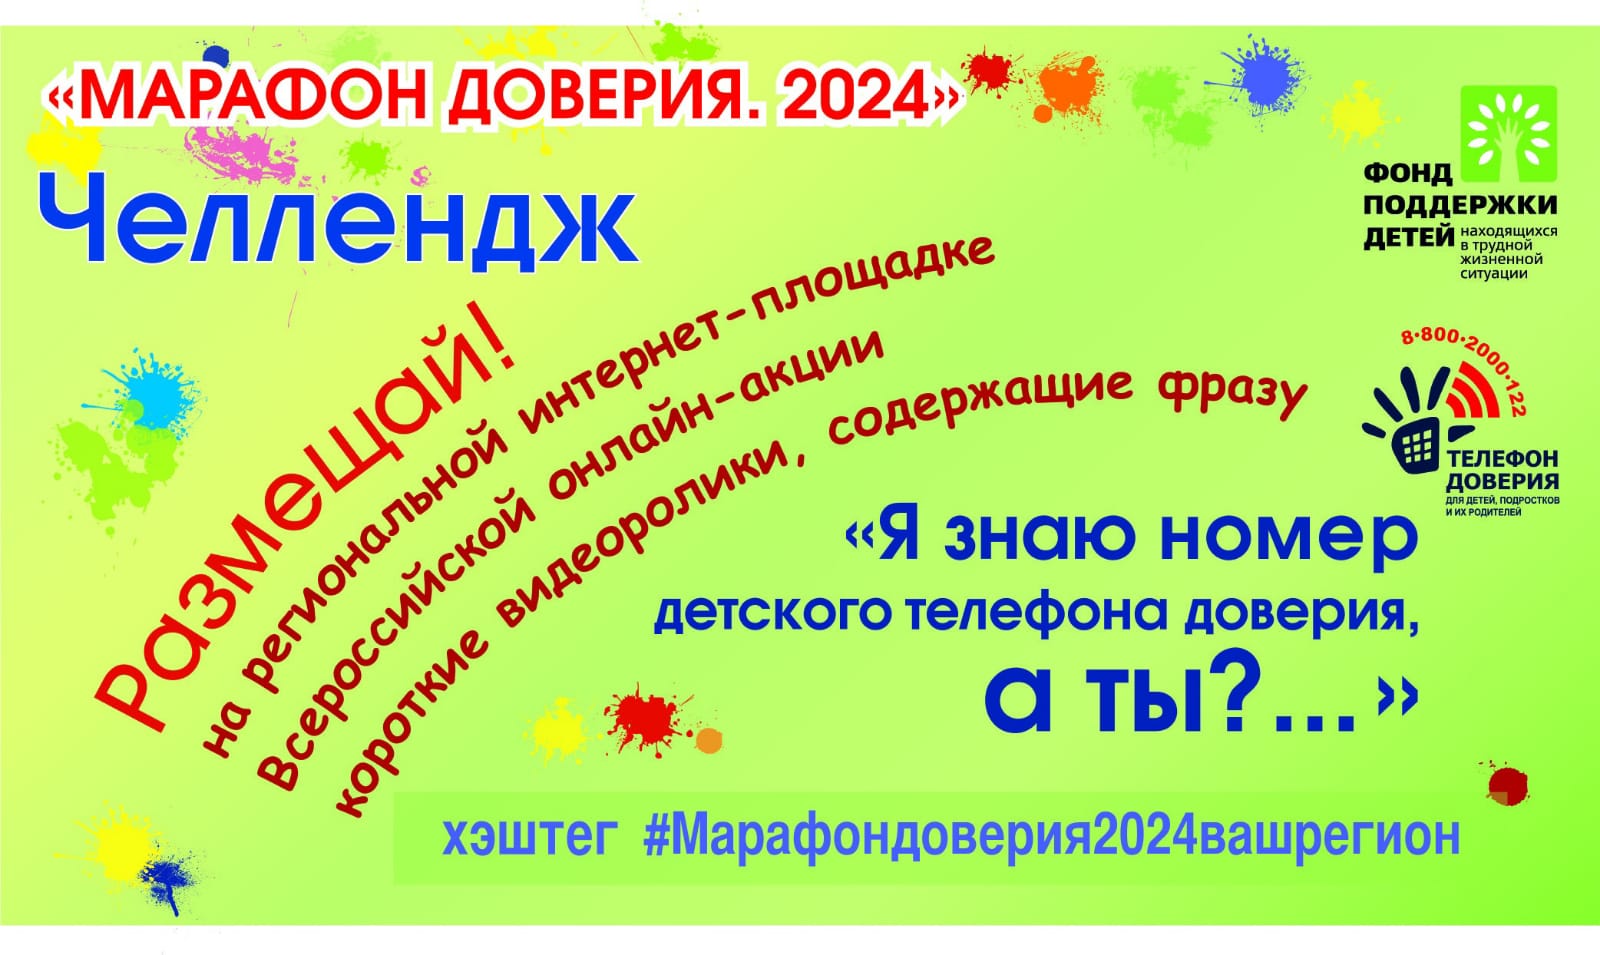 Вологжан приглашают принять участие в Челлендже «Марафон доверия.2024»